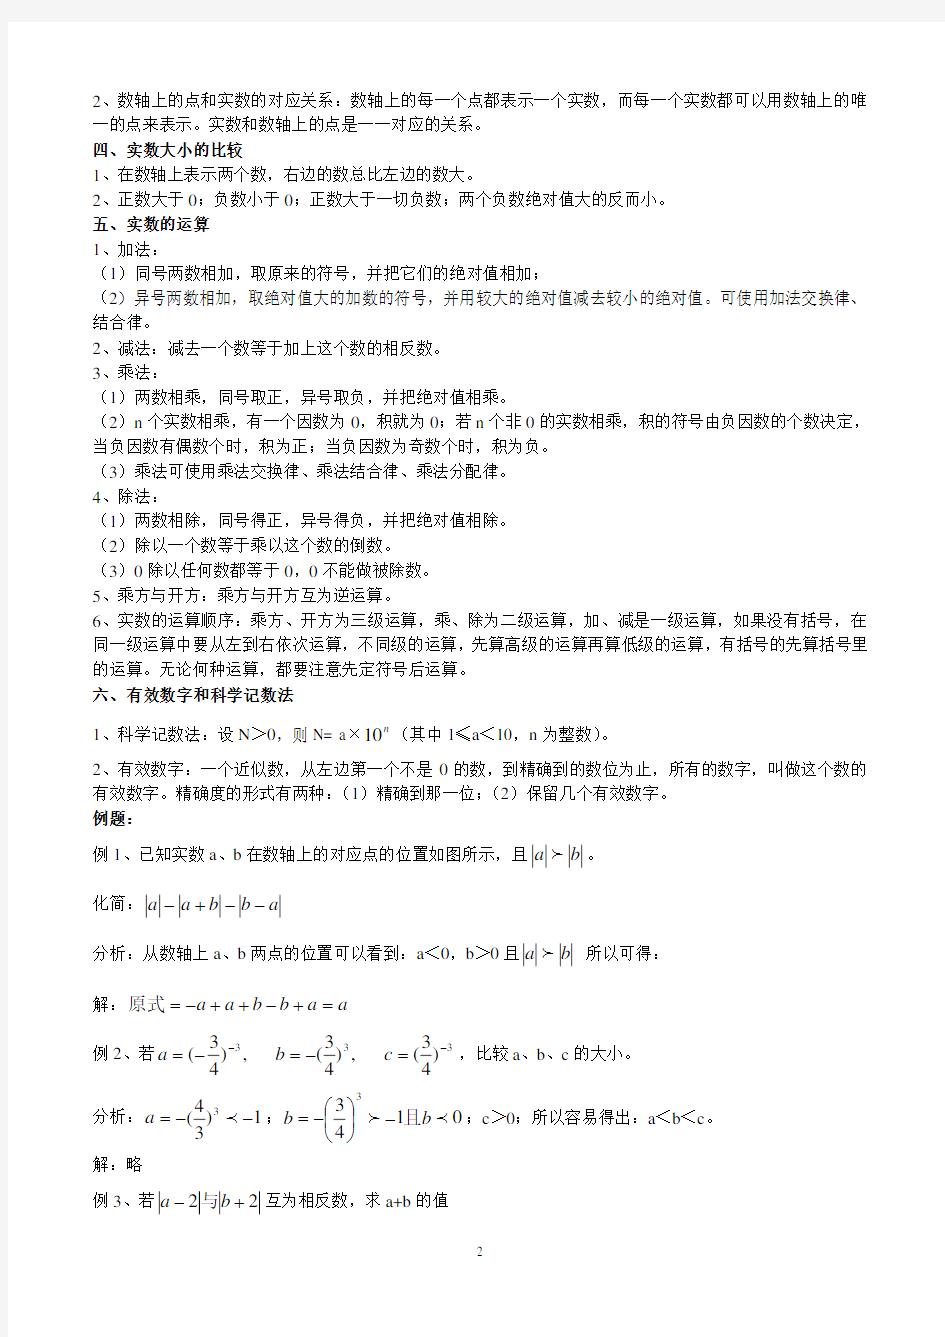 中考数学总复习资料(2020年整理).pdf